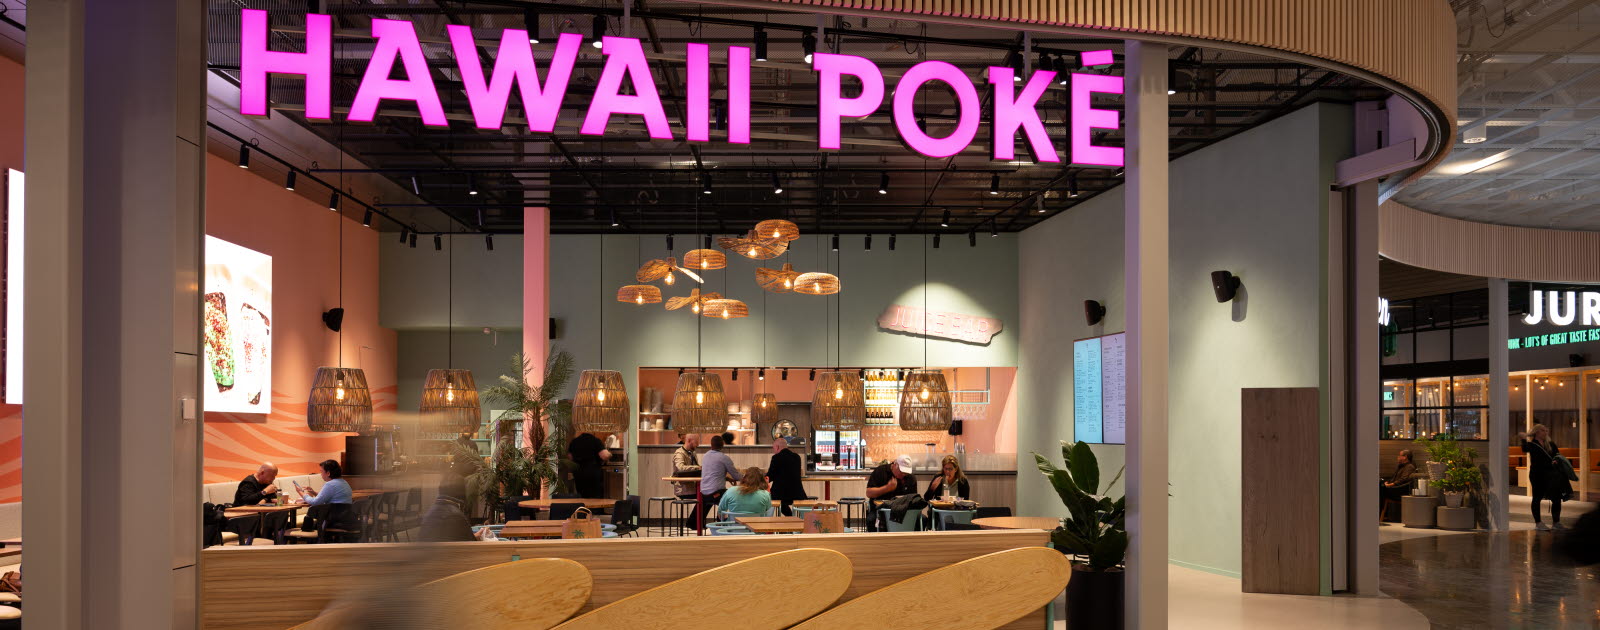 Restaurang med turkos- och korallfärgad vägg, surfinspirerad inredning och en stor rosa neonskylt med texten "Hawaii Poké".